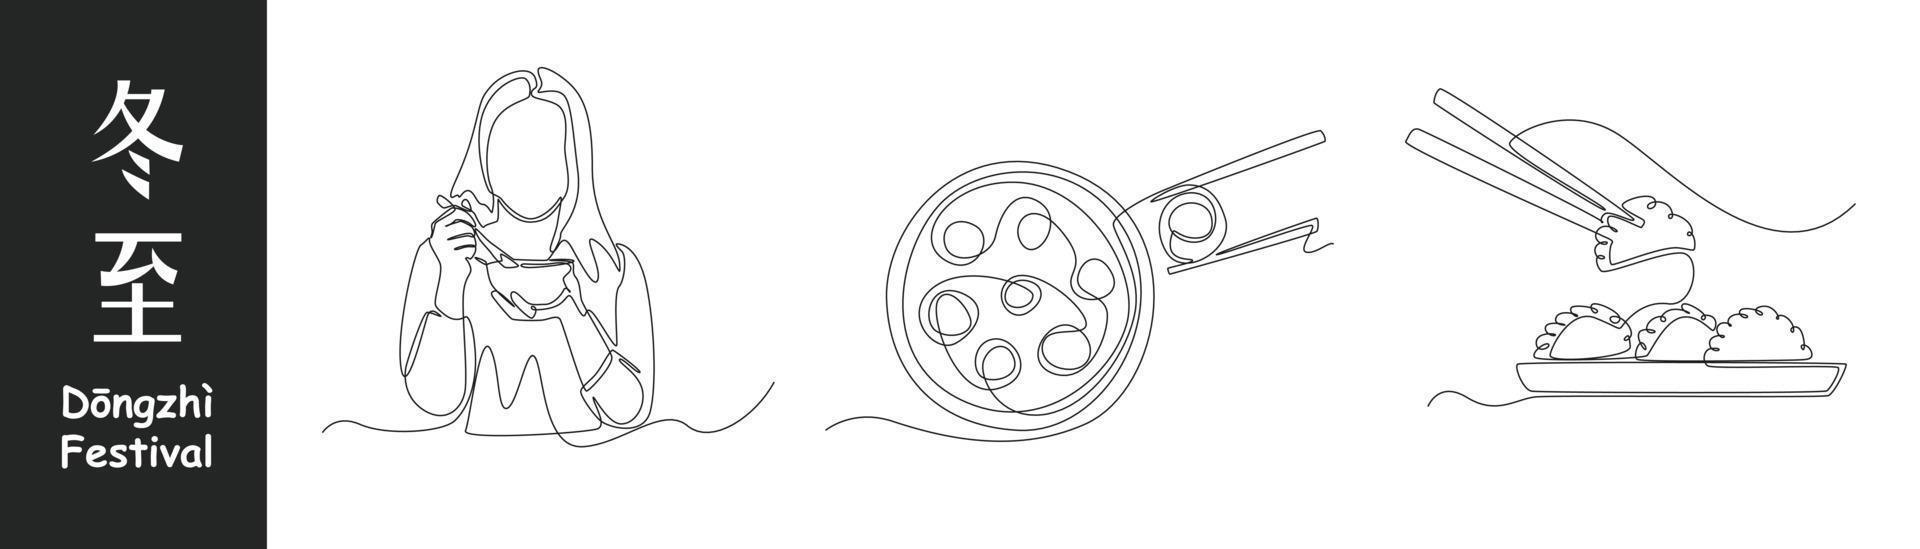 doorlopend een lijn tekening dongzhi festival concept set. zoet meisje eten knoedel schaal, knoedel en pan gebakken met eetstokje . single lijn trek ontwerp vector grafisch illustratie.